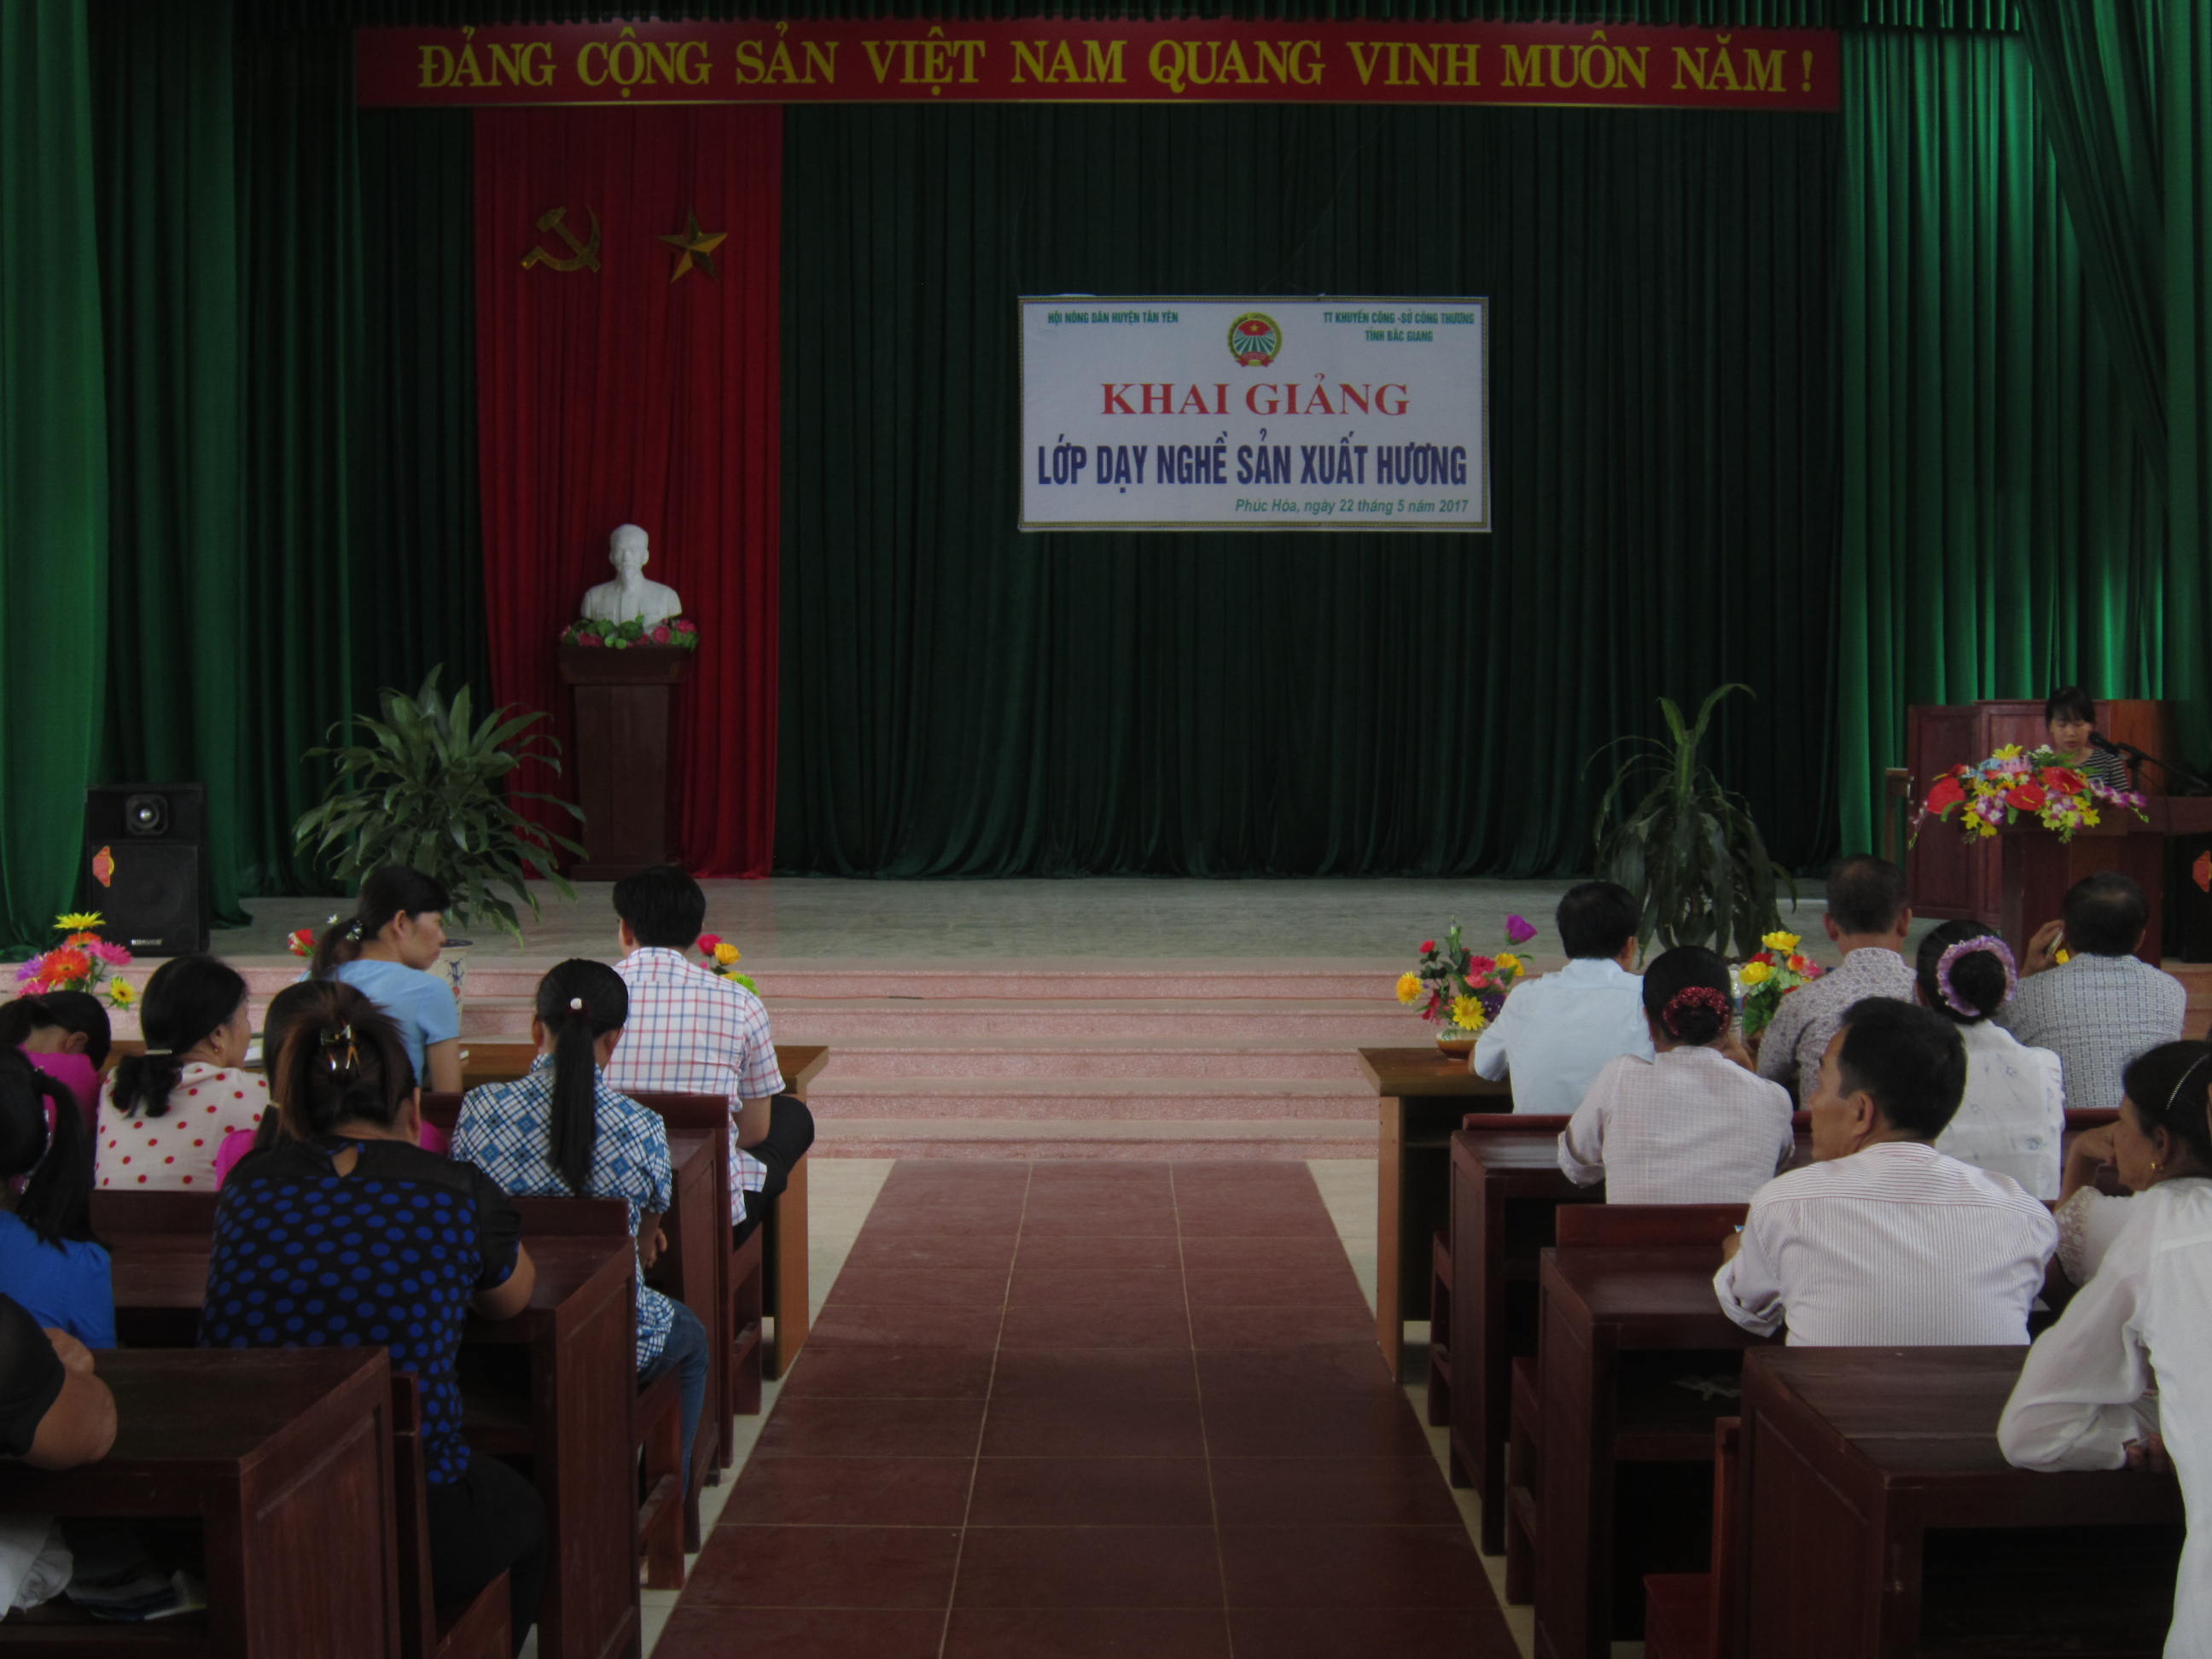 Khai giảng lớp dạy nghề sản xuất hương tại xã Phúc Hòa, huyện Tân Yên